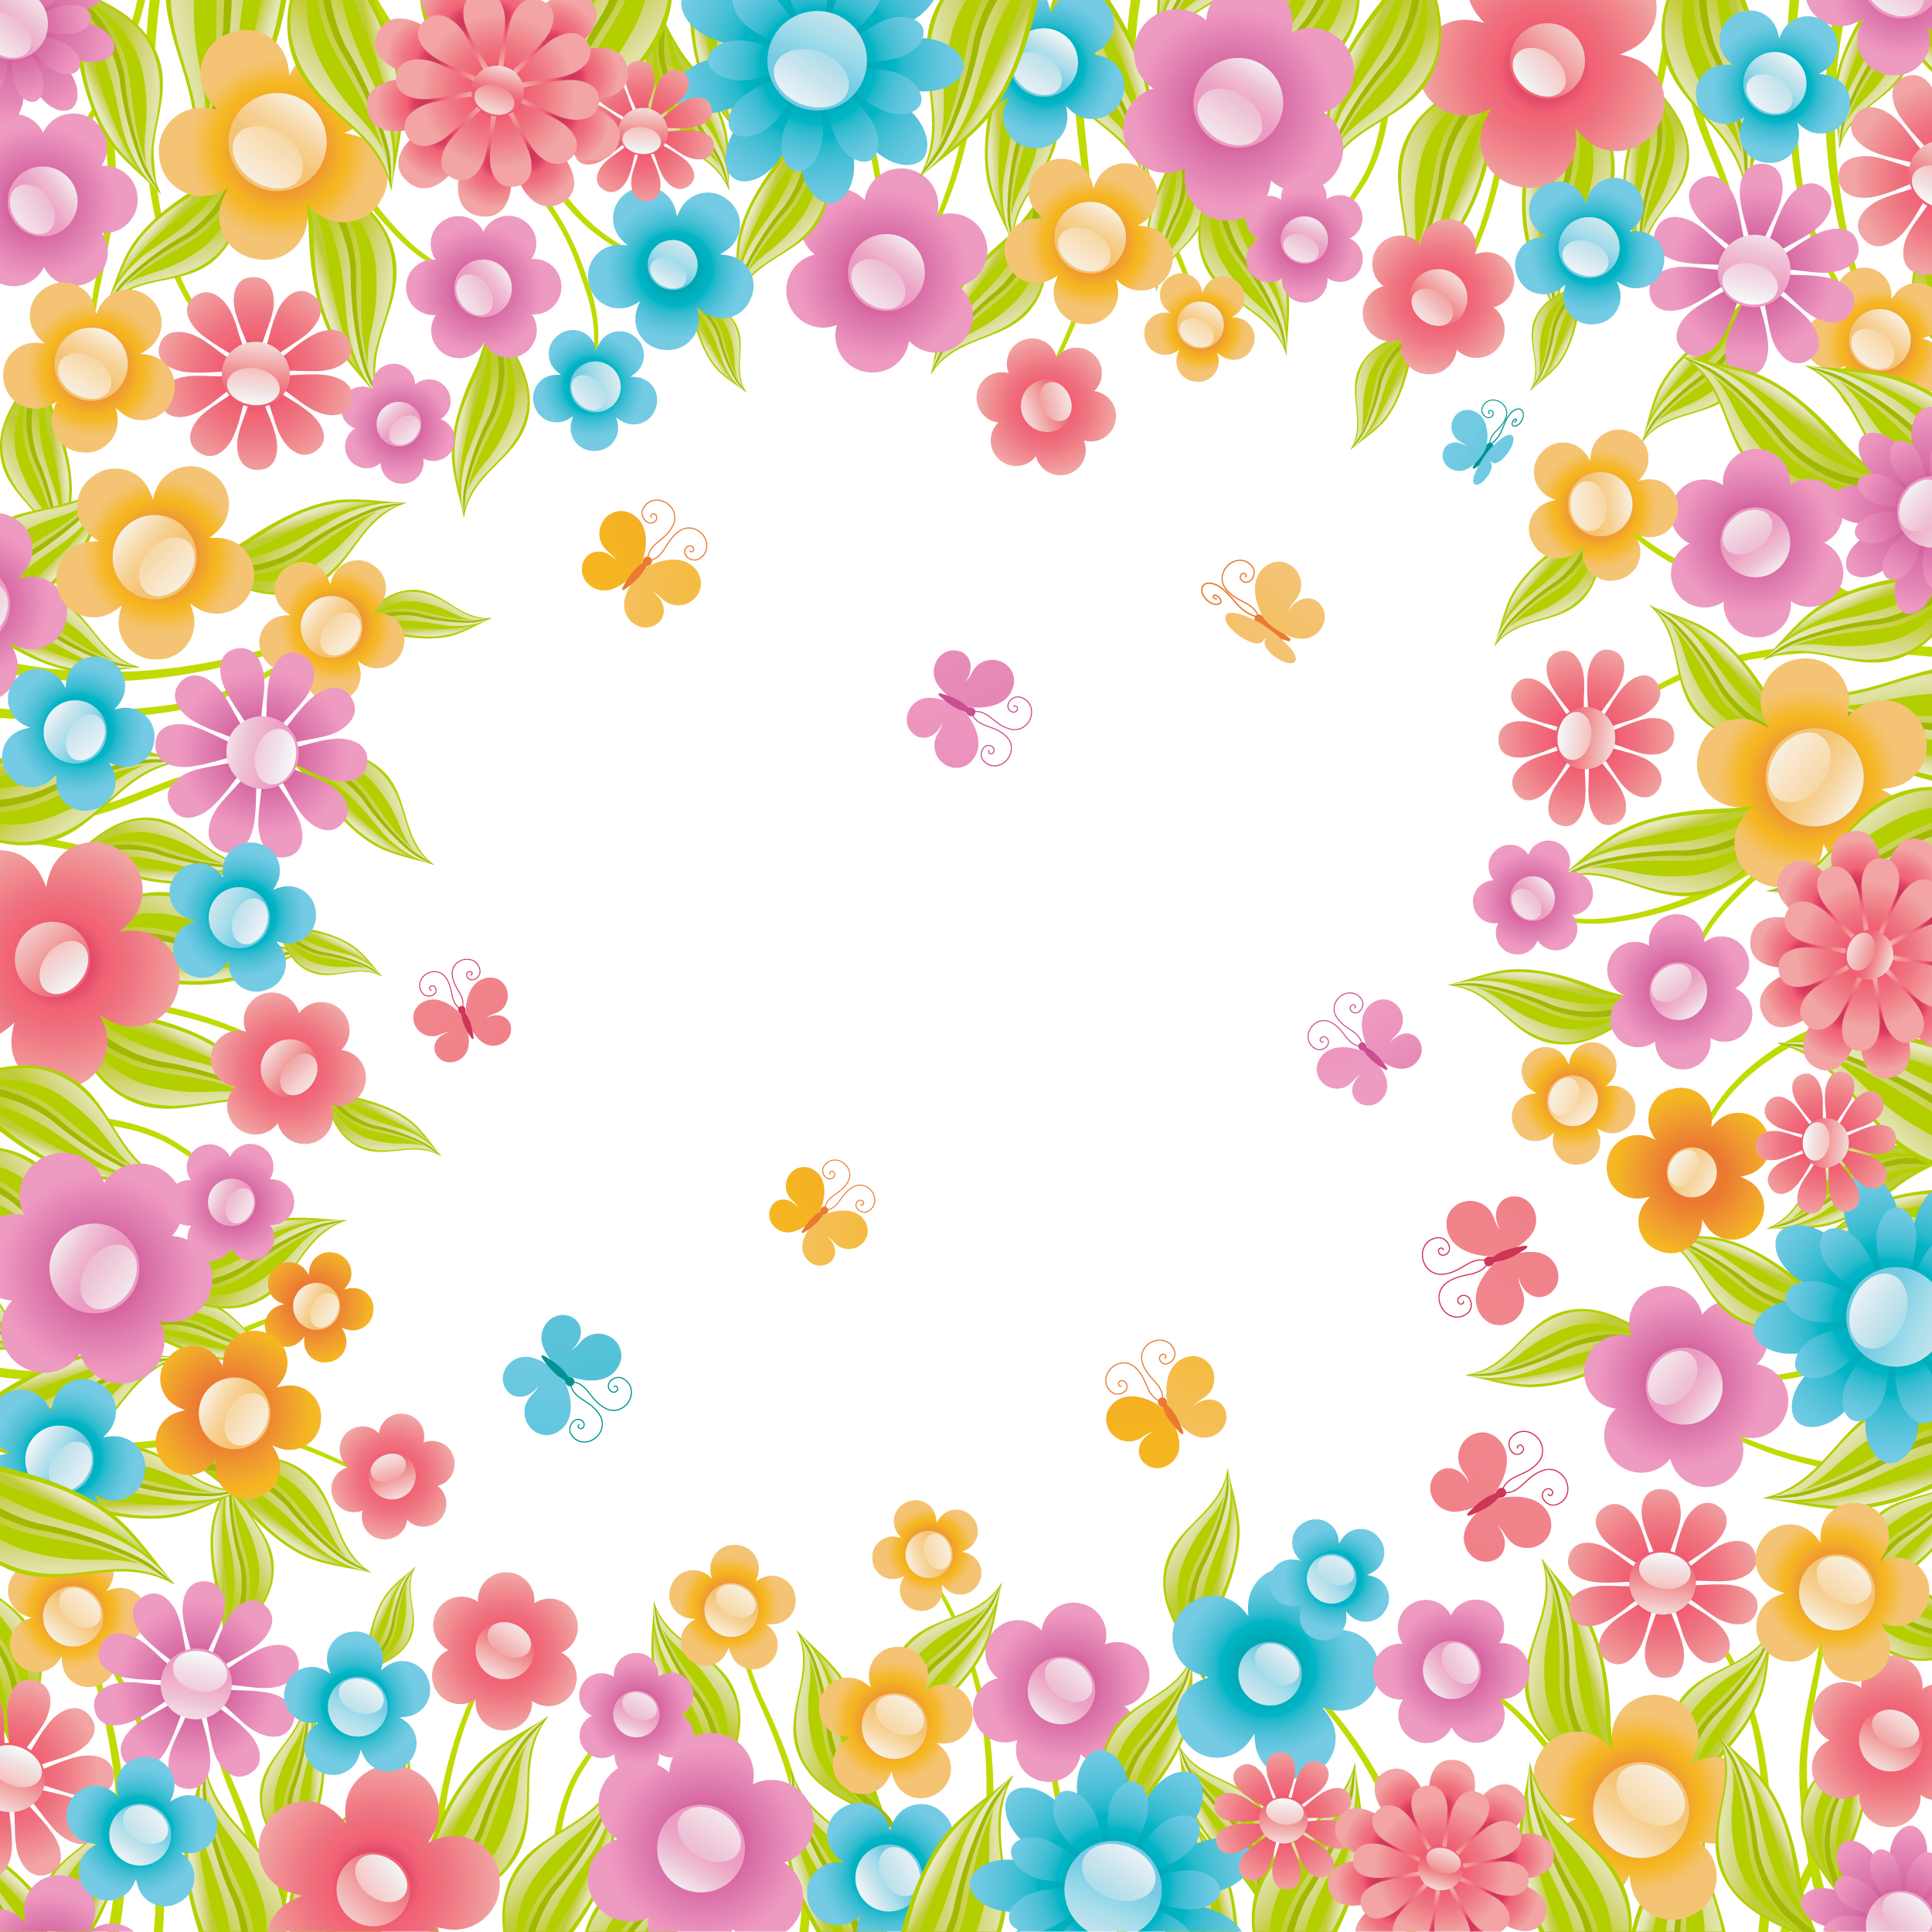 美しい花の画像 最新のhdお花畑 イラスト